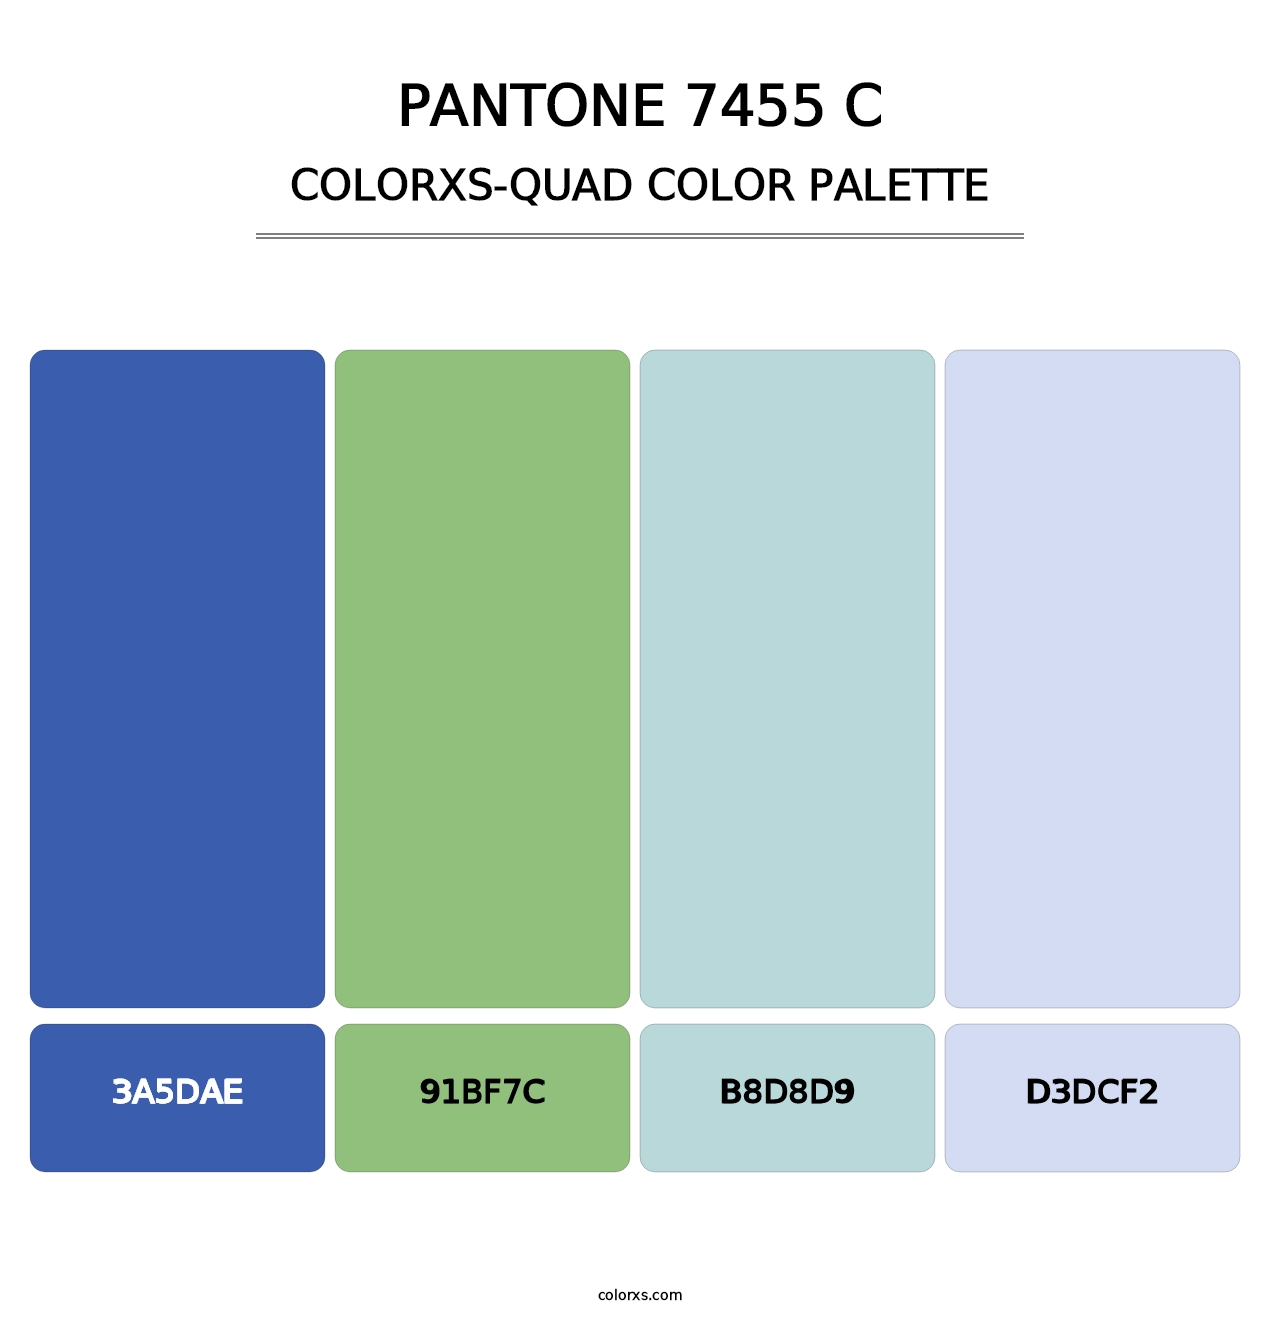 PANTONE 7455 C - Colorxs Quad Palette